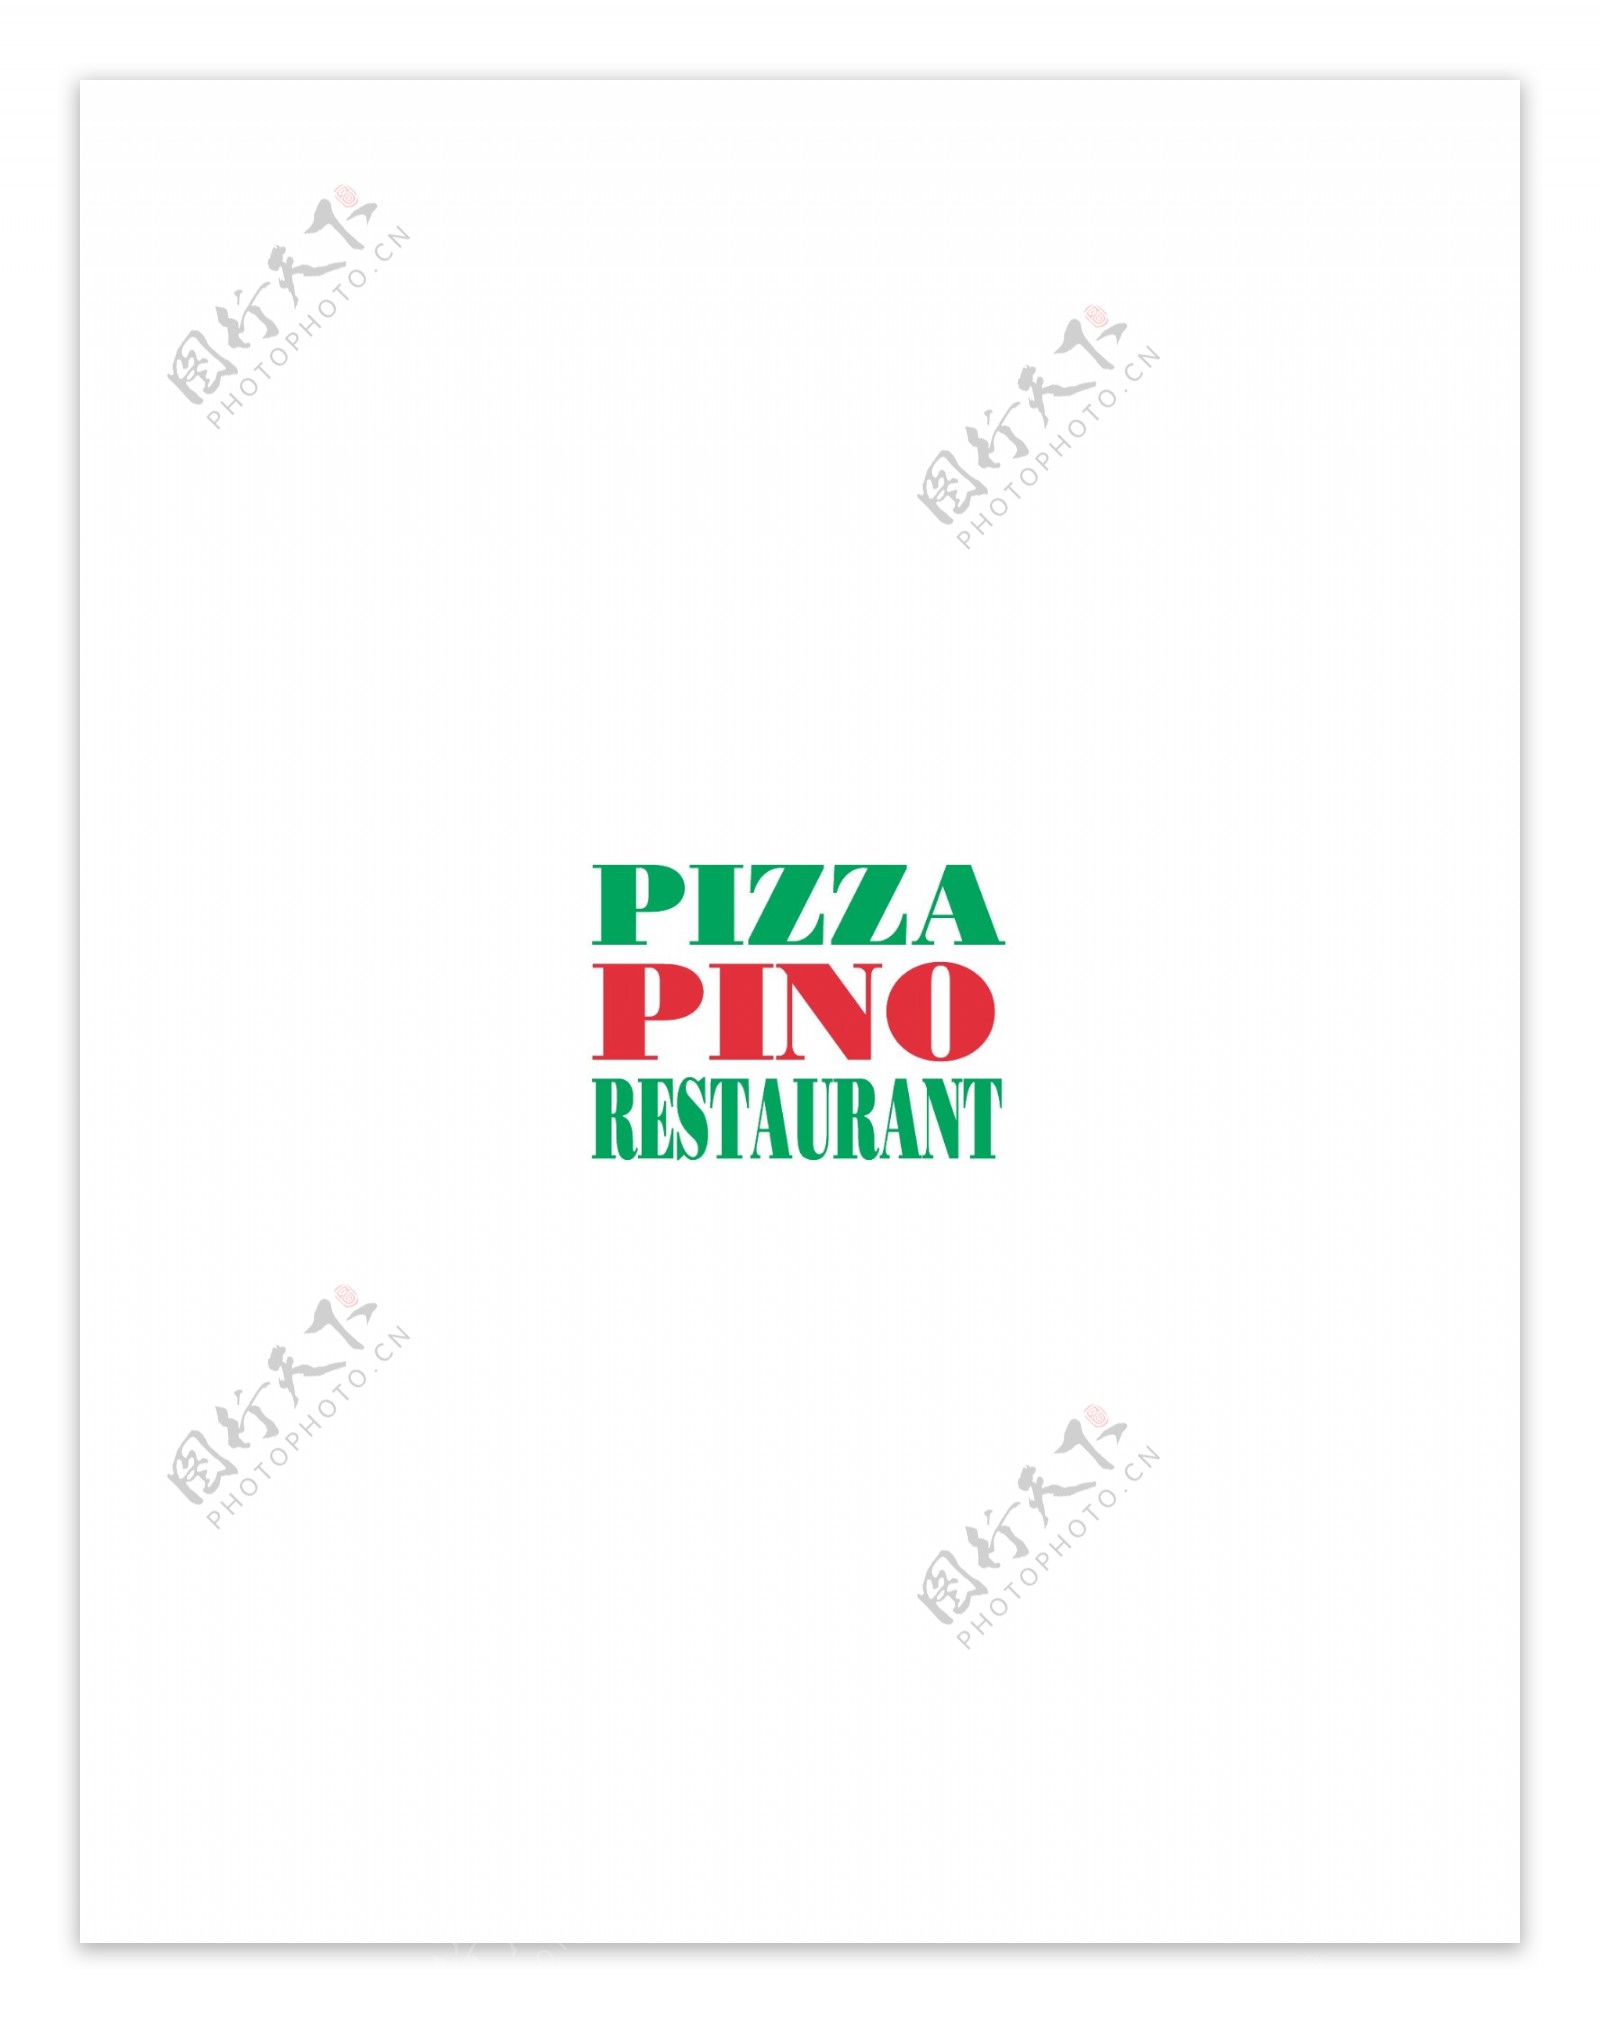 PizzaPinoRestaurantlogo设计欣赏PizzaPinoRestaurant饮料品牌LOGO下载标志设计欣赏